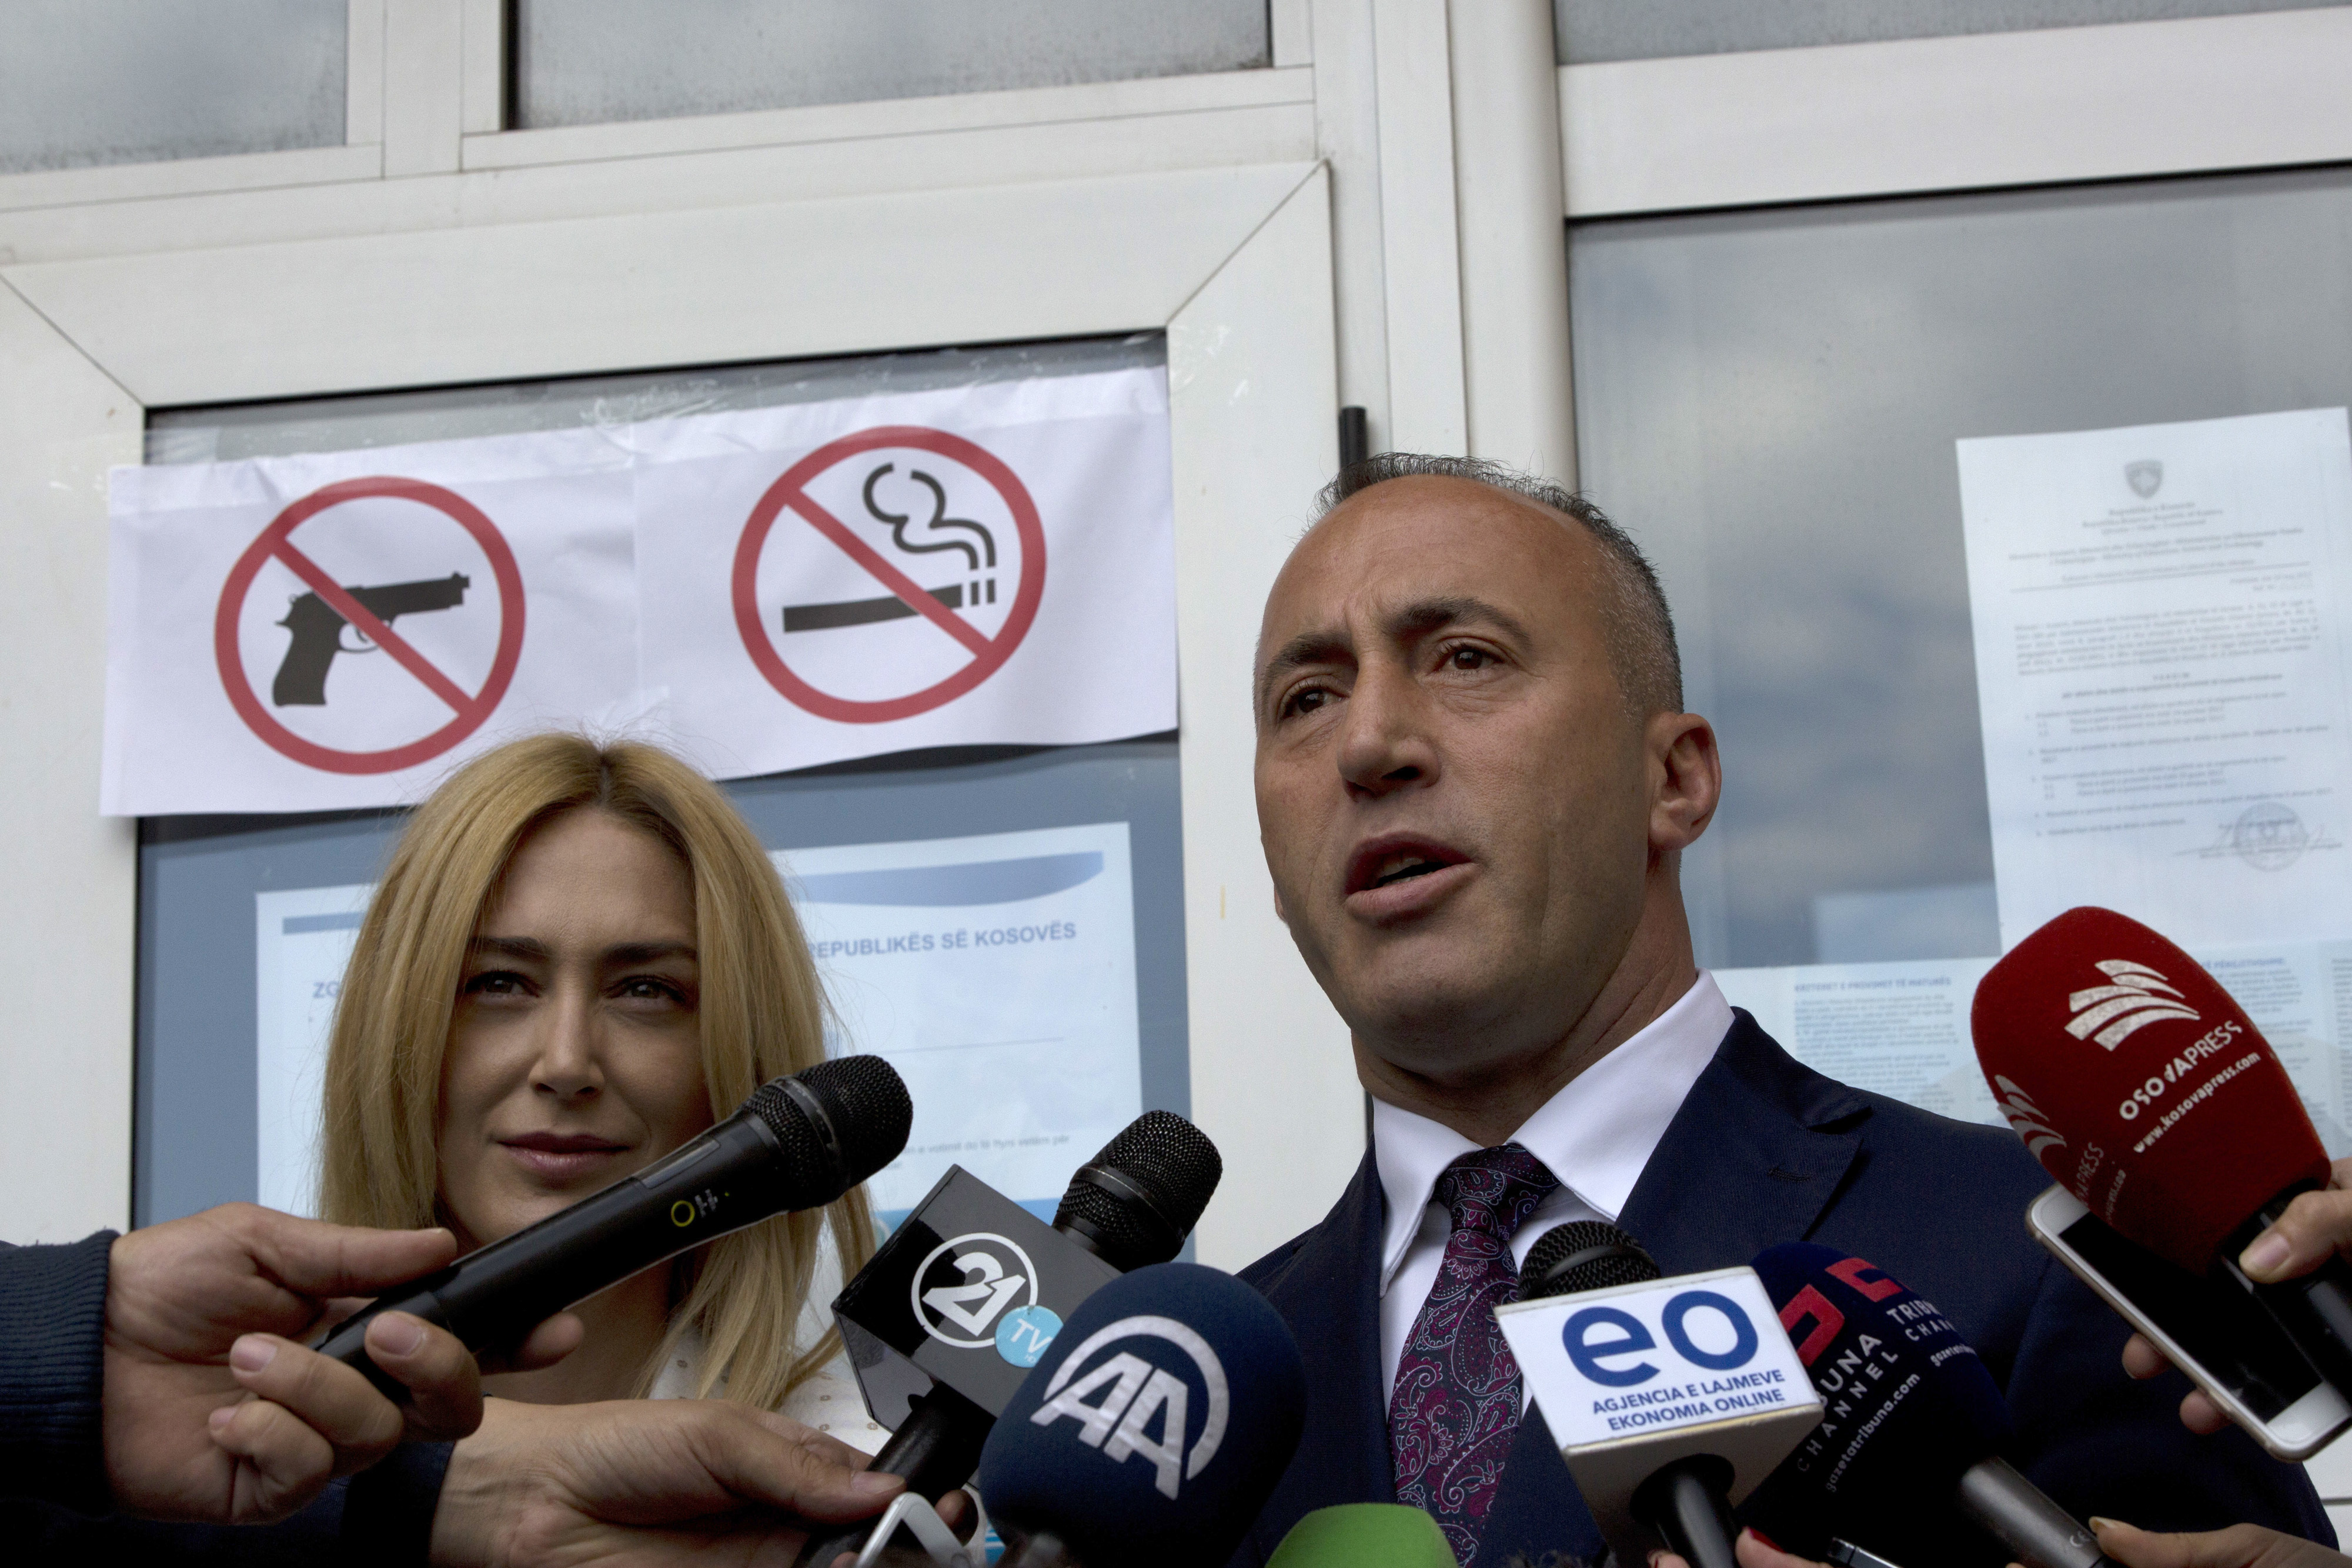 Харадинай с мандат за съставяне на правителство в Косово